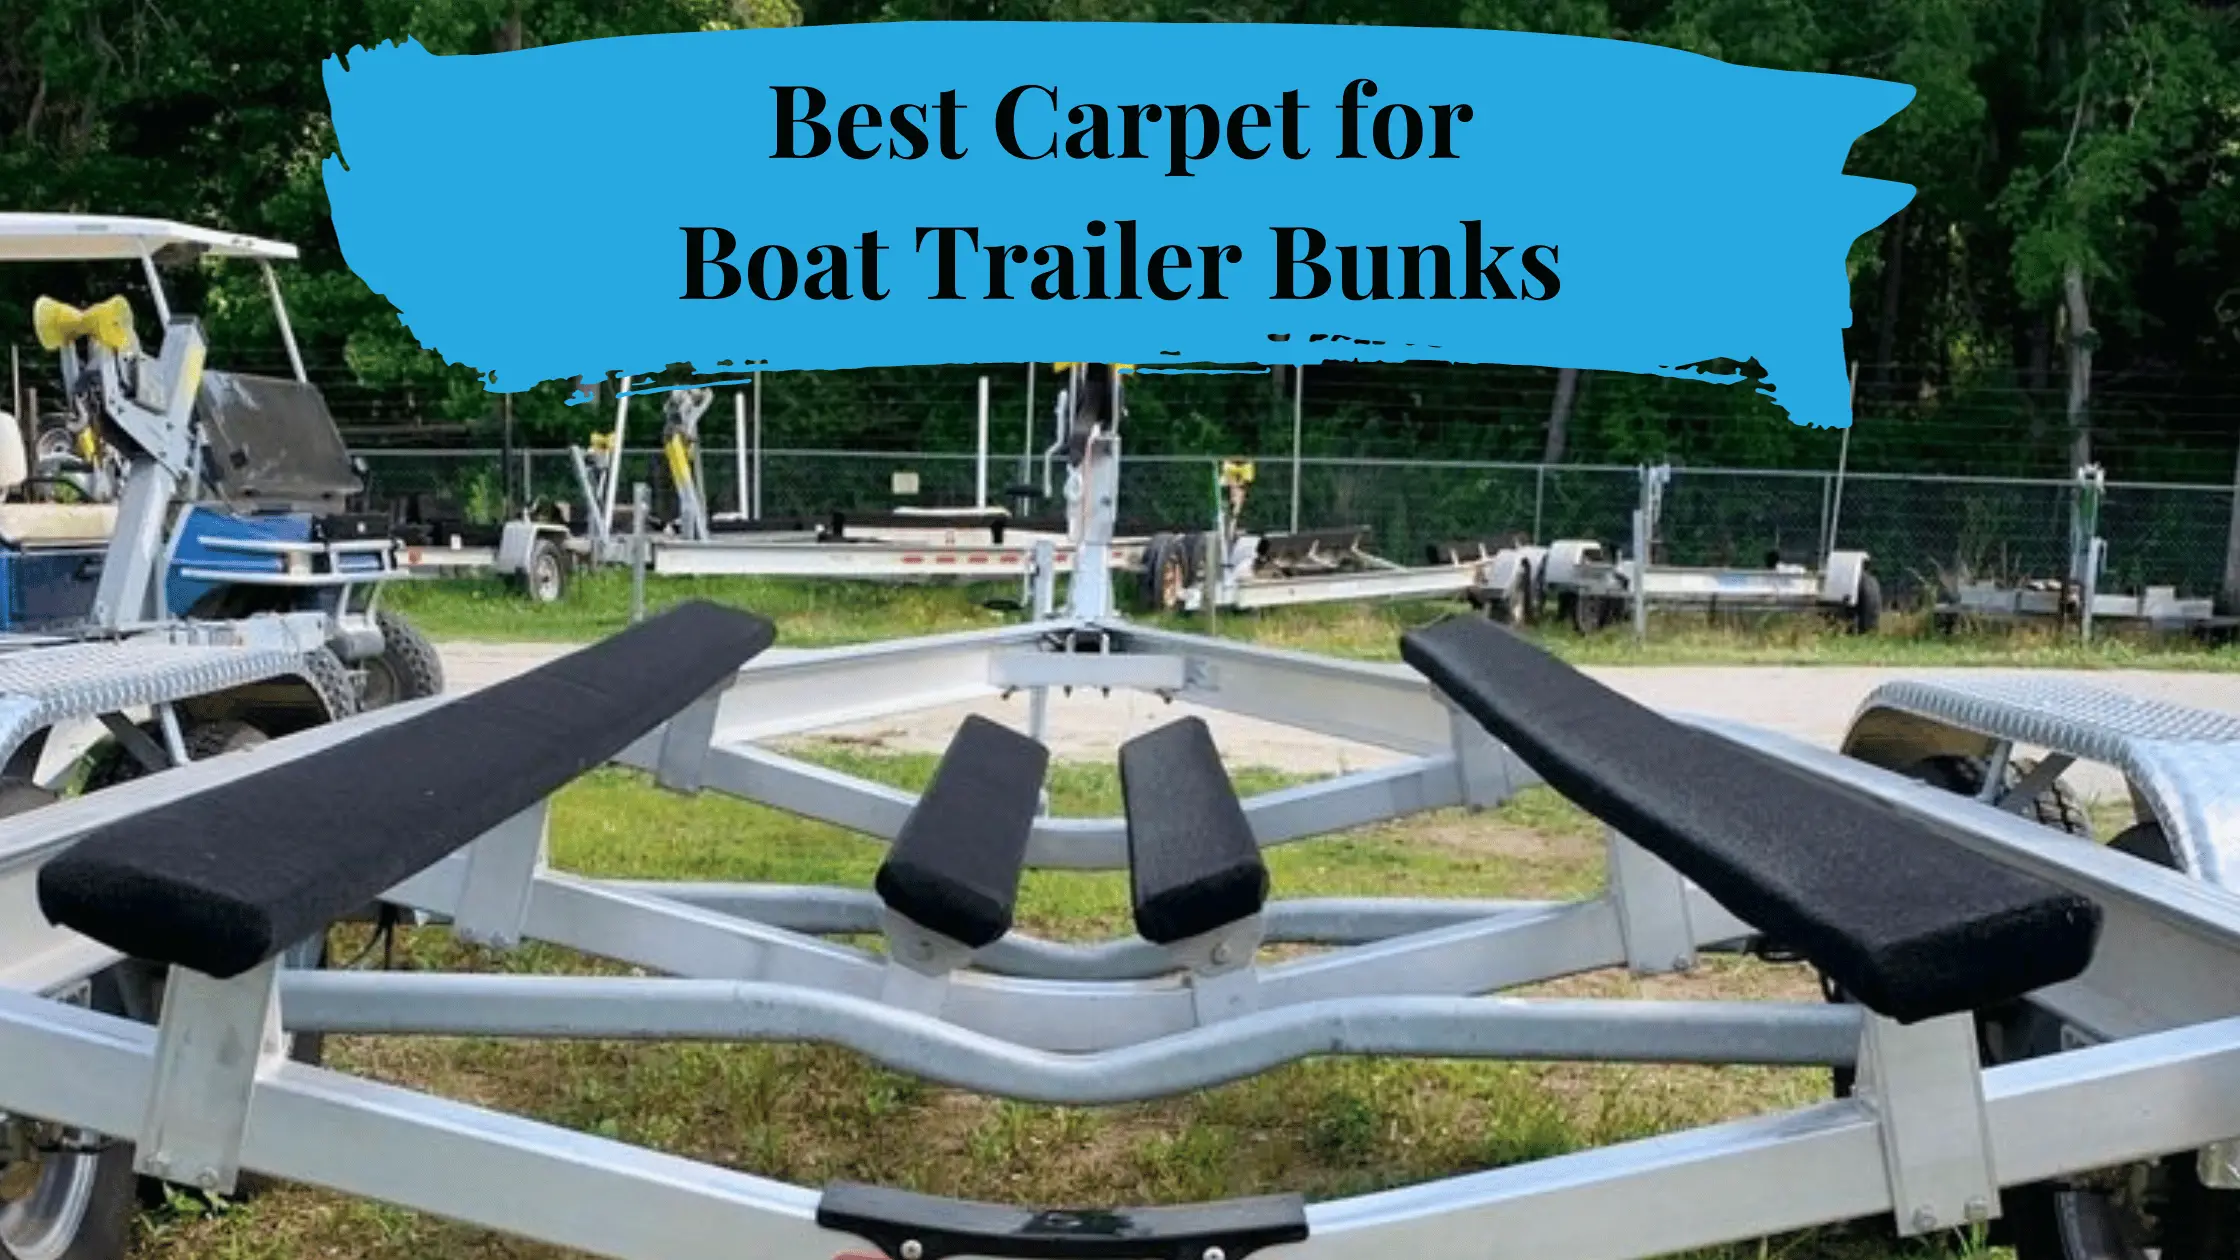 Best Carpet for Boat Trailer Bunks